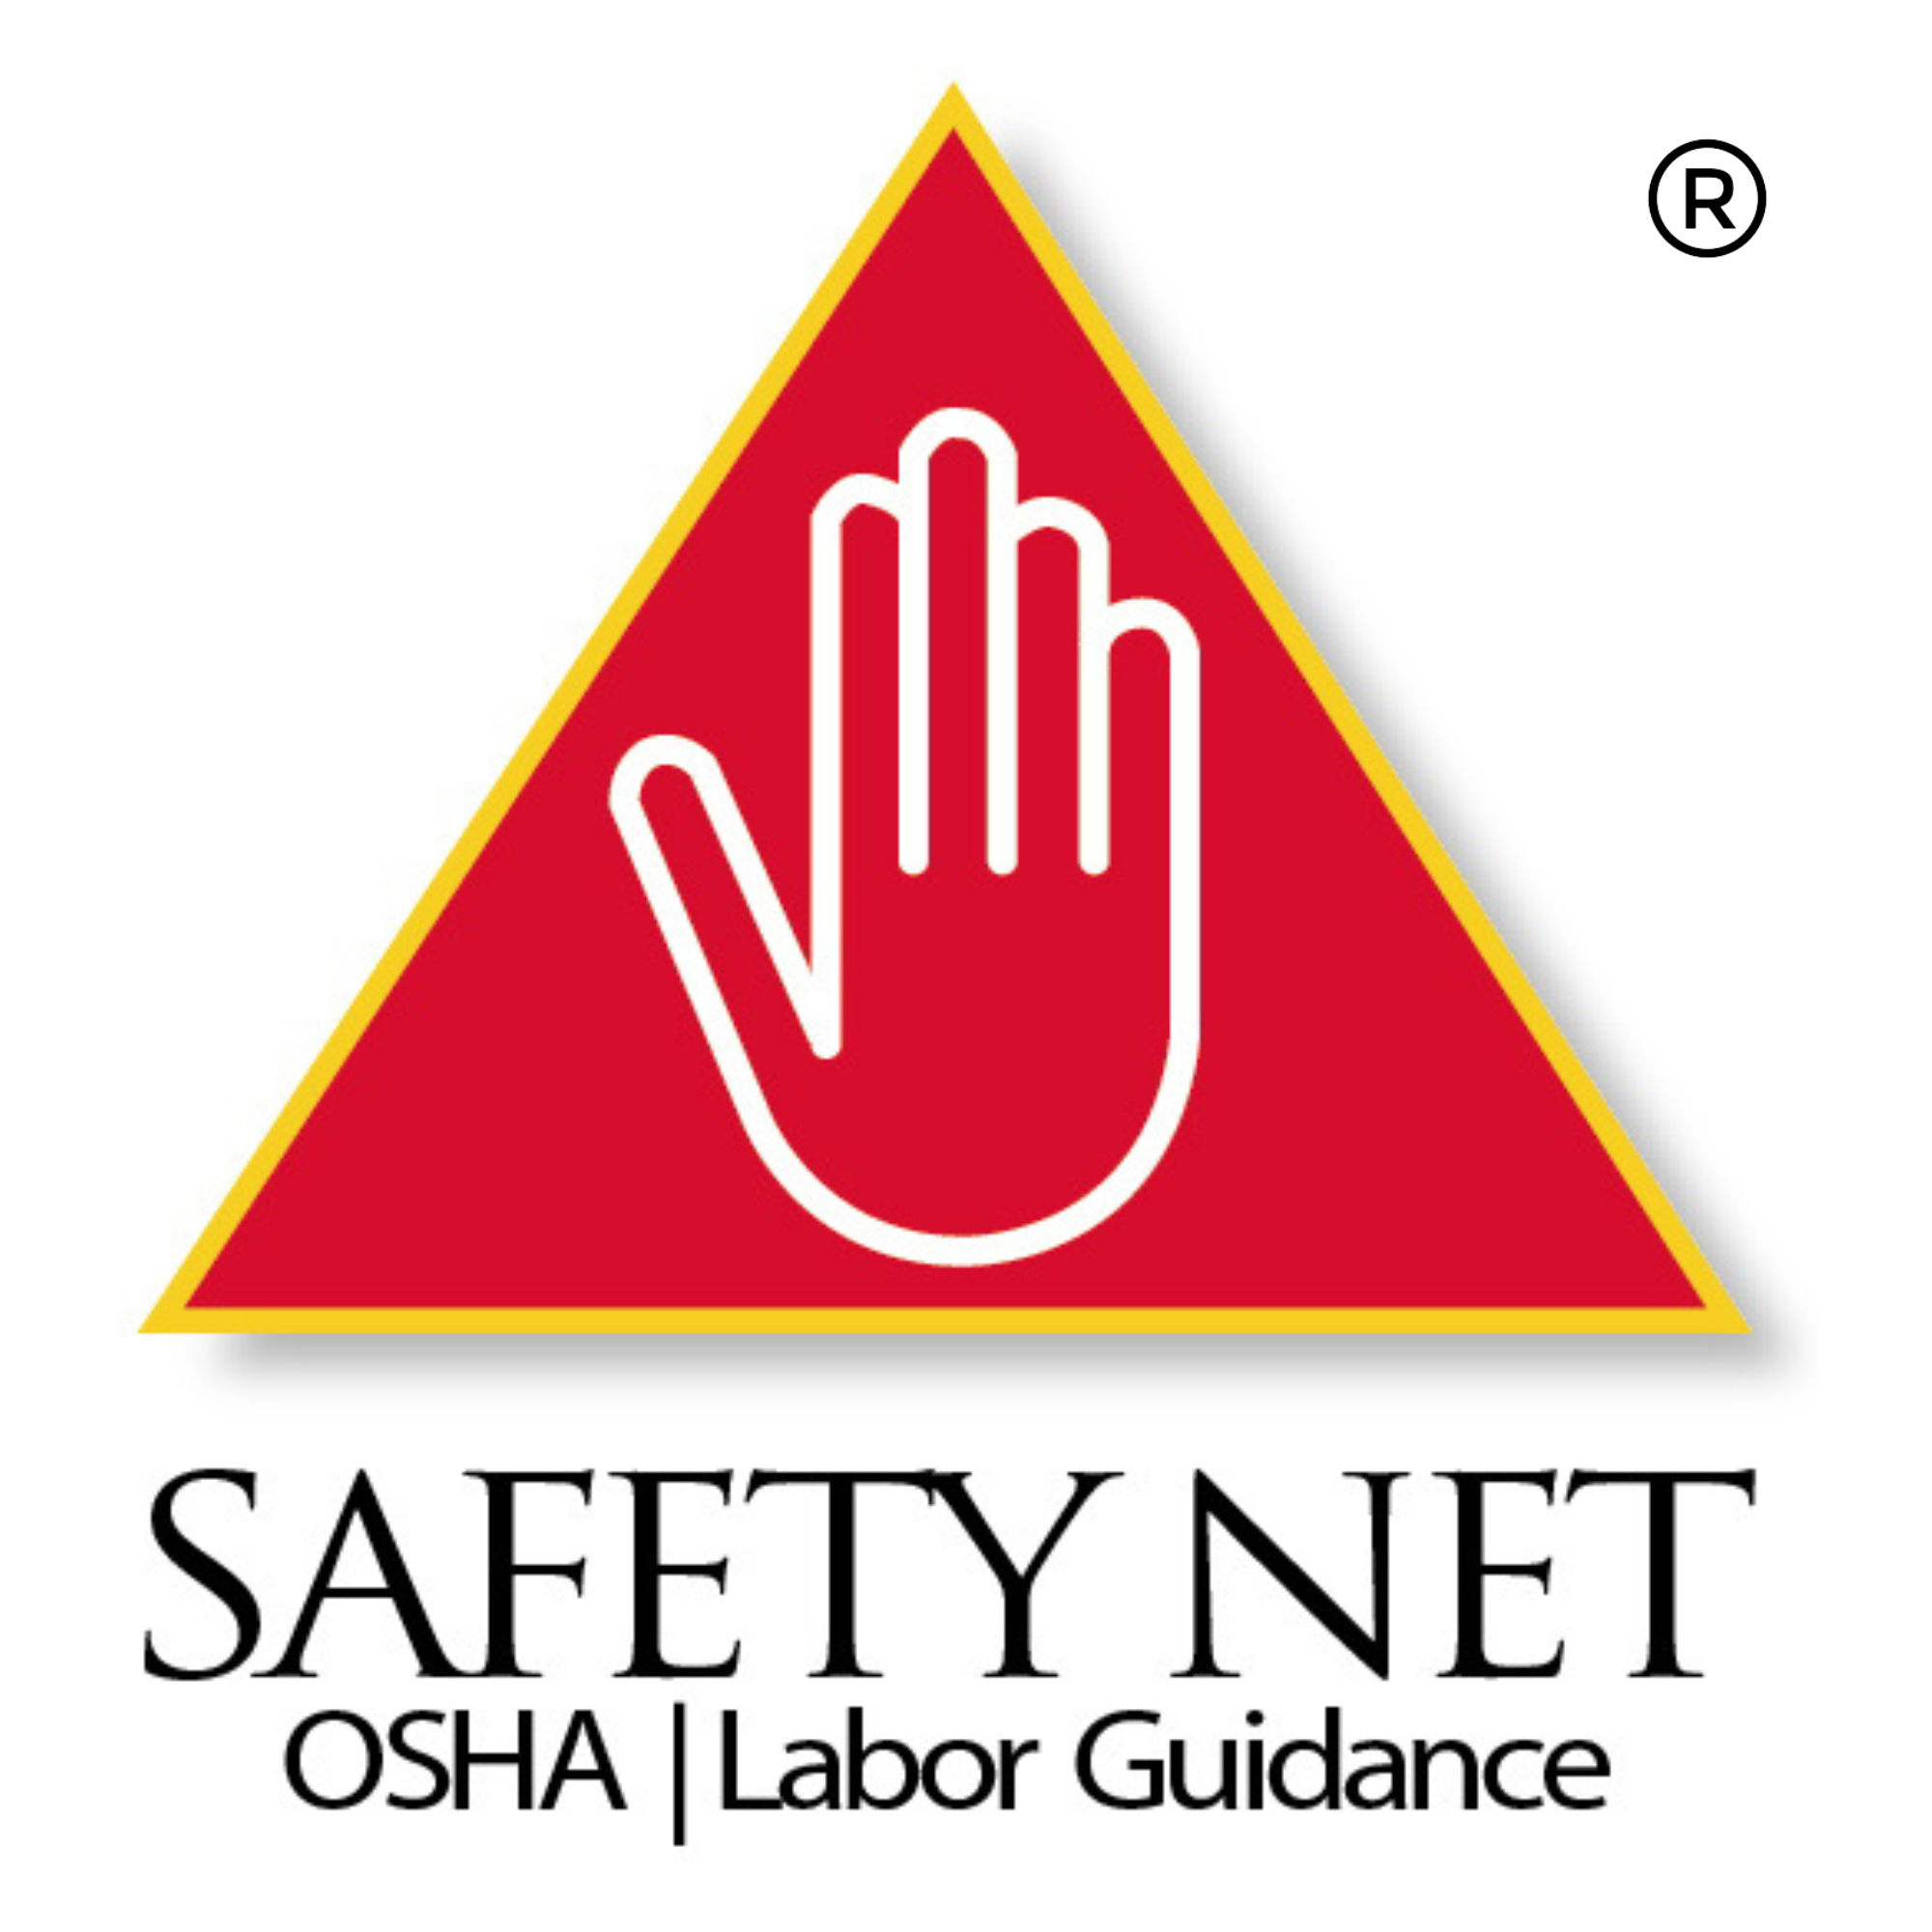 Safety Net Osha Labor Guidance logo